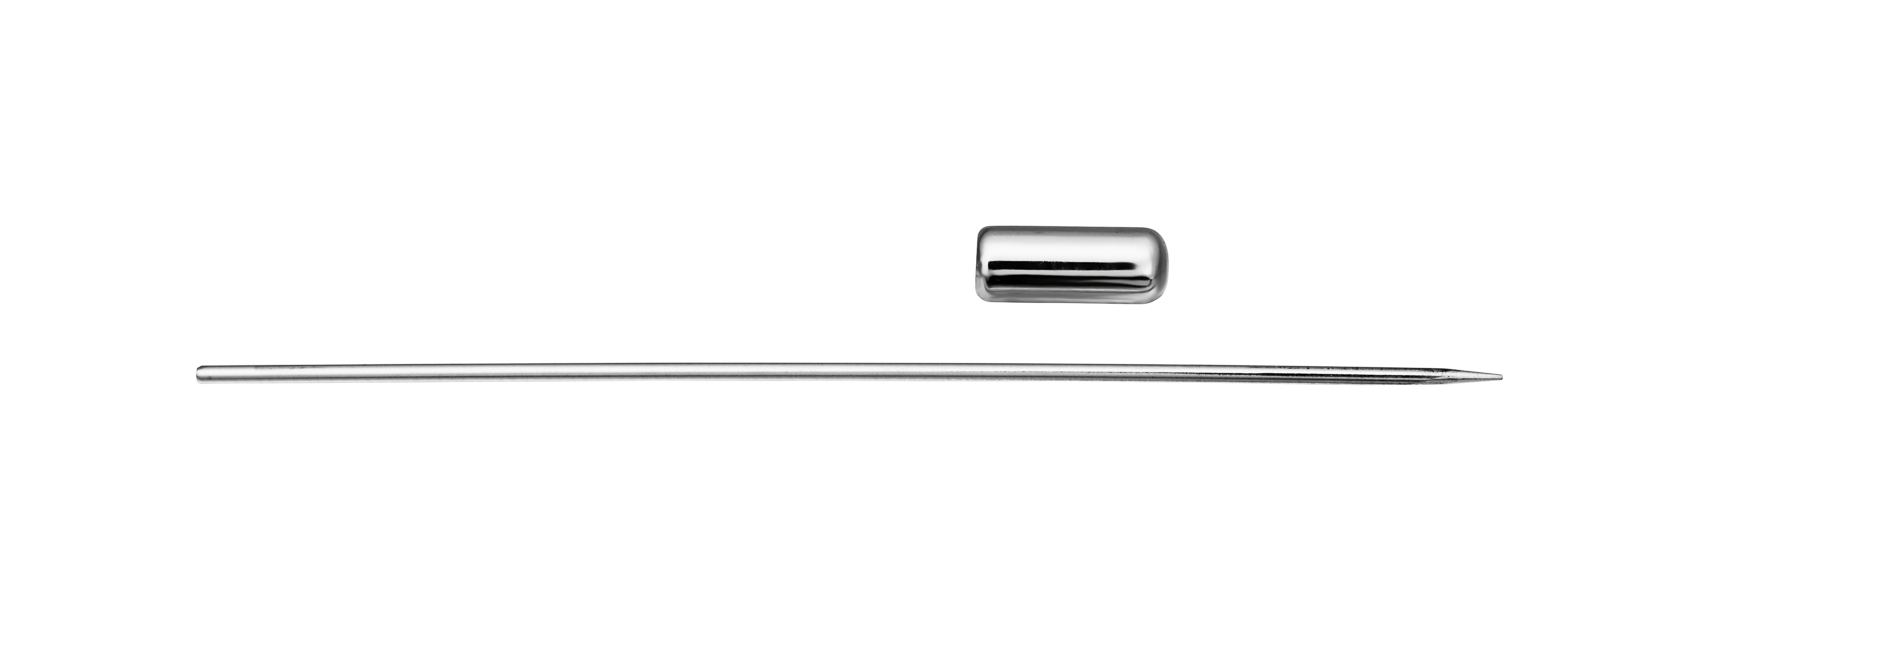 Pincho Long. 70 mm - Hilo 1 mm Ø - Tapón 10 x 4 mm